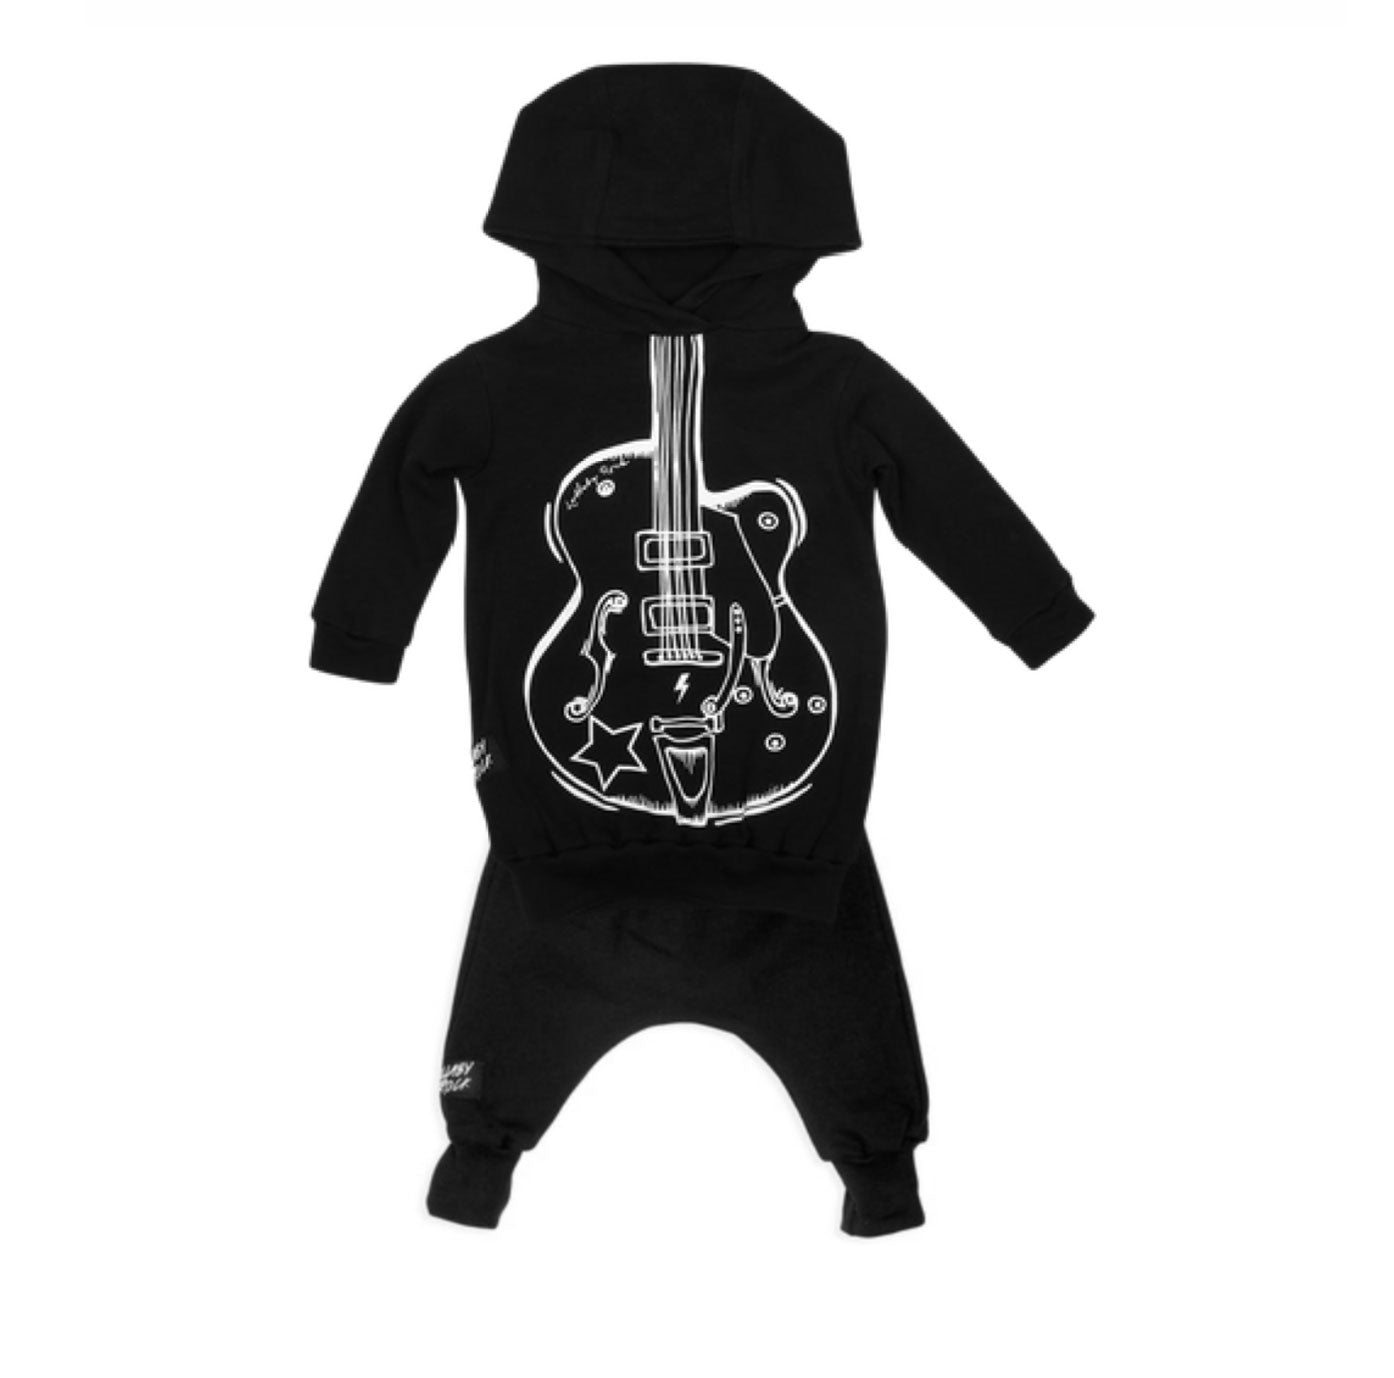 The Guitarist Hooded Sweatshirt & Leggings